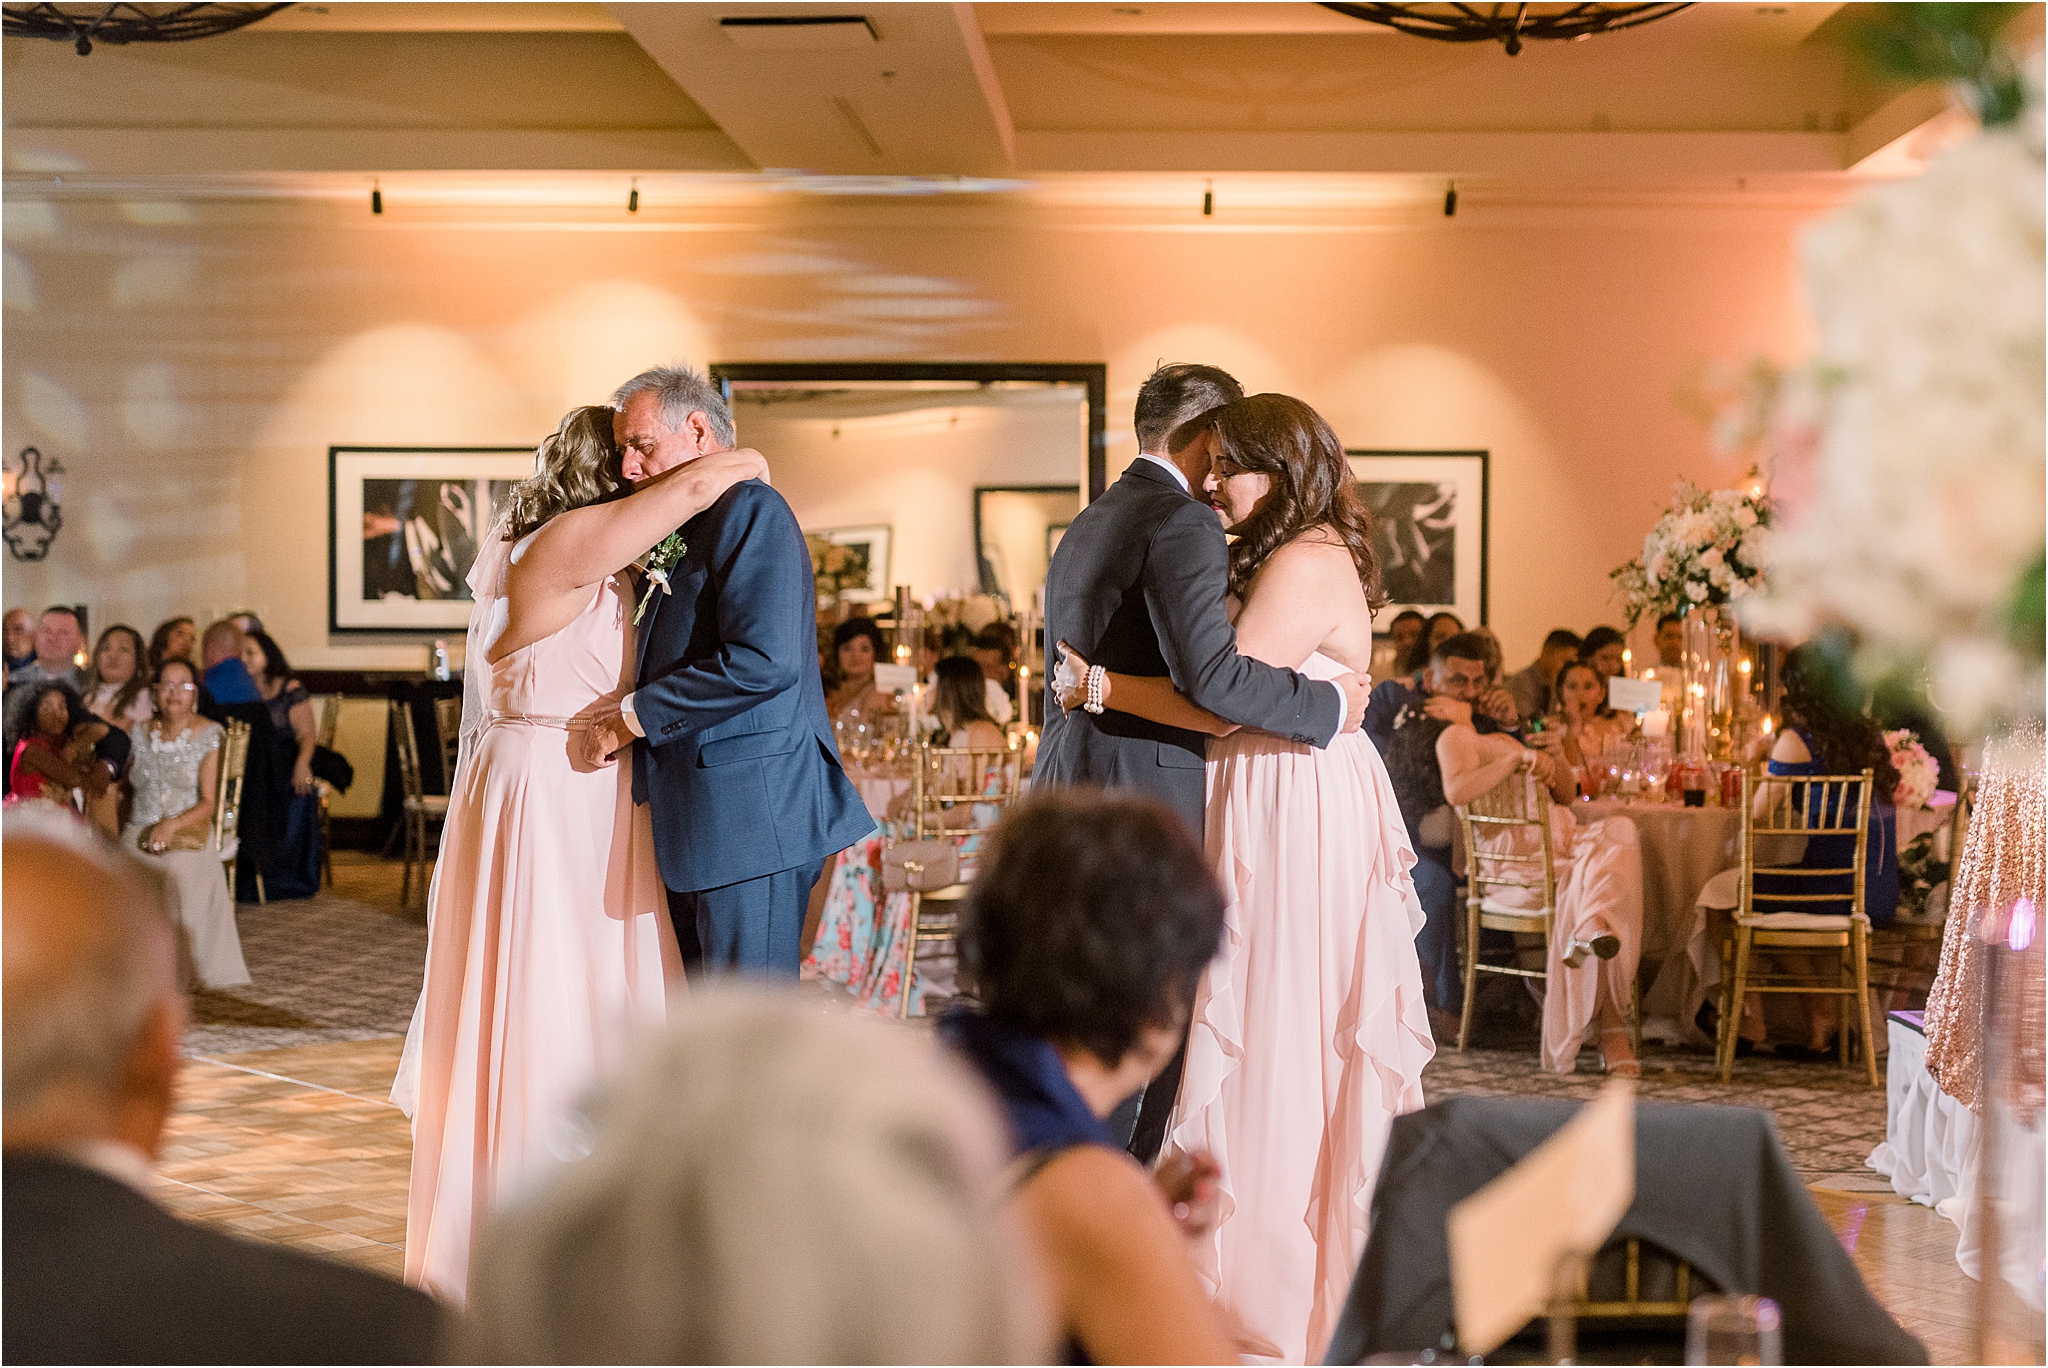 Omni Wedding Photographer | Tucson AZ | Ligia and Arturo reception photos | Tucson Wedding Photographer | West End Photography